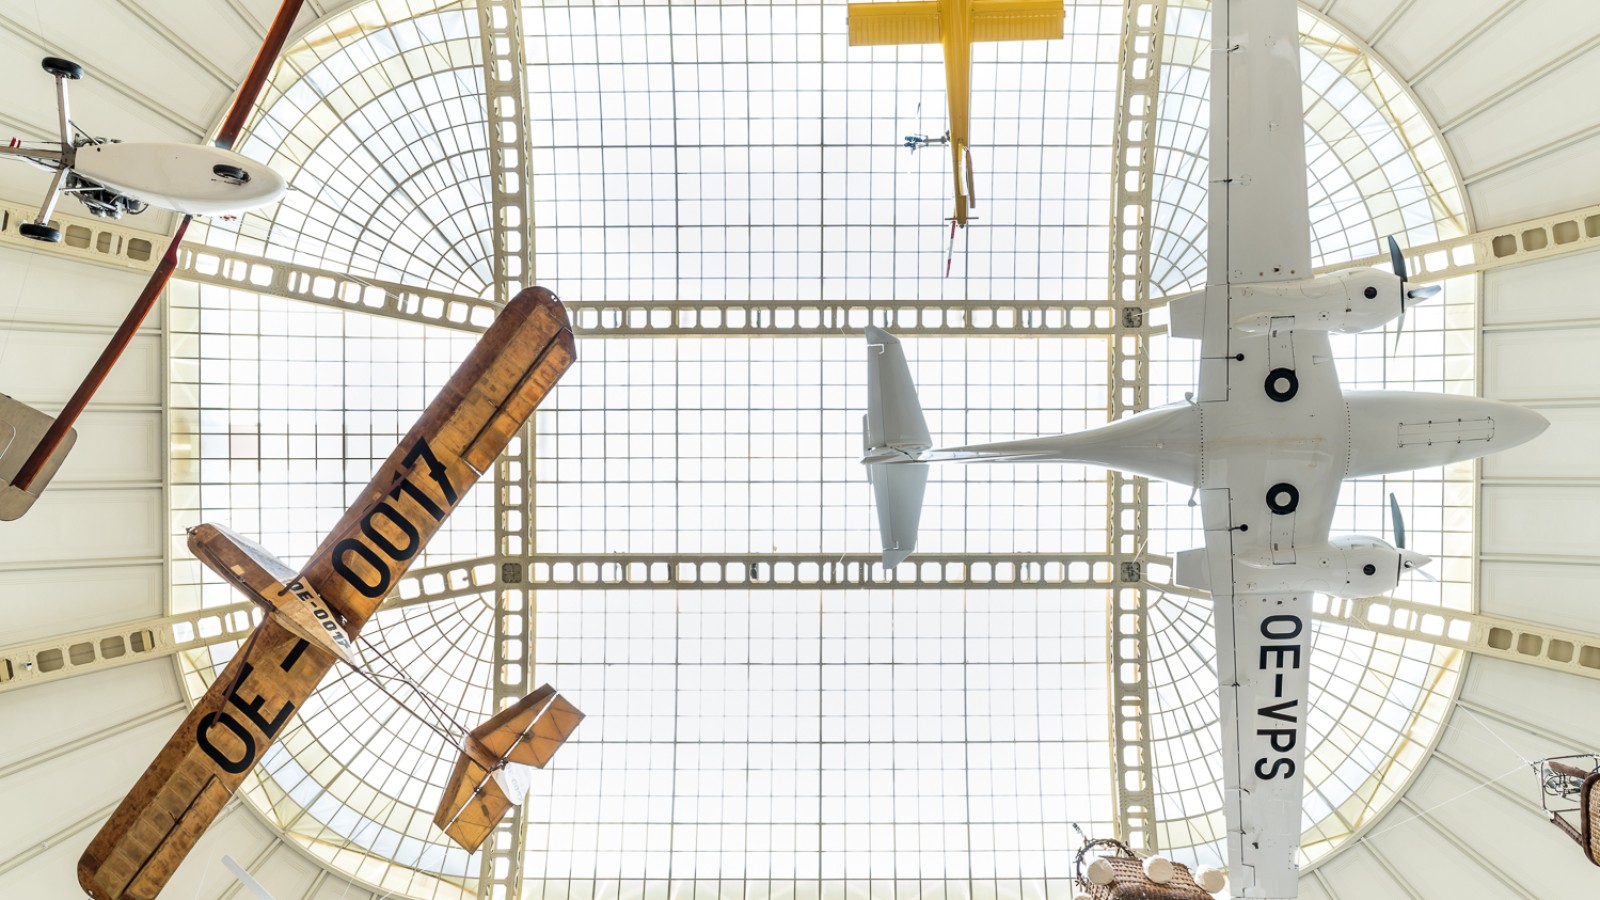 Flugzeuge, die unter dem Dach des Museums hängen, Teil der Ausstellung "Mobilität": 